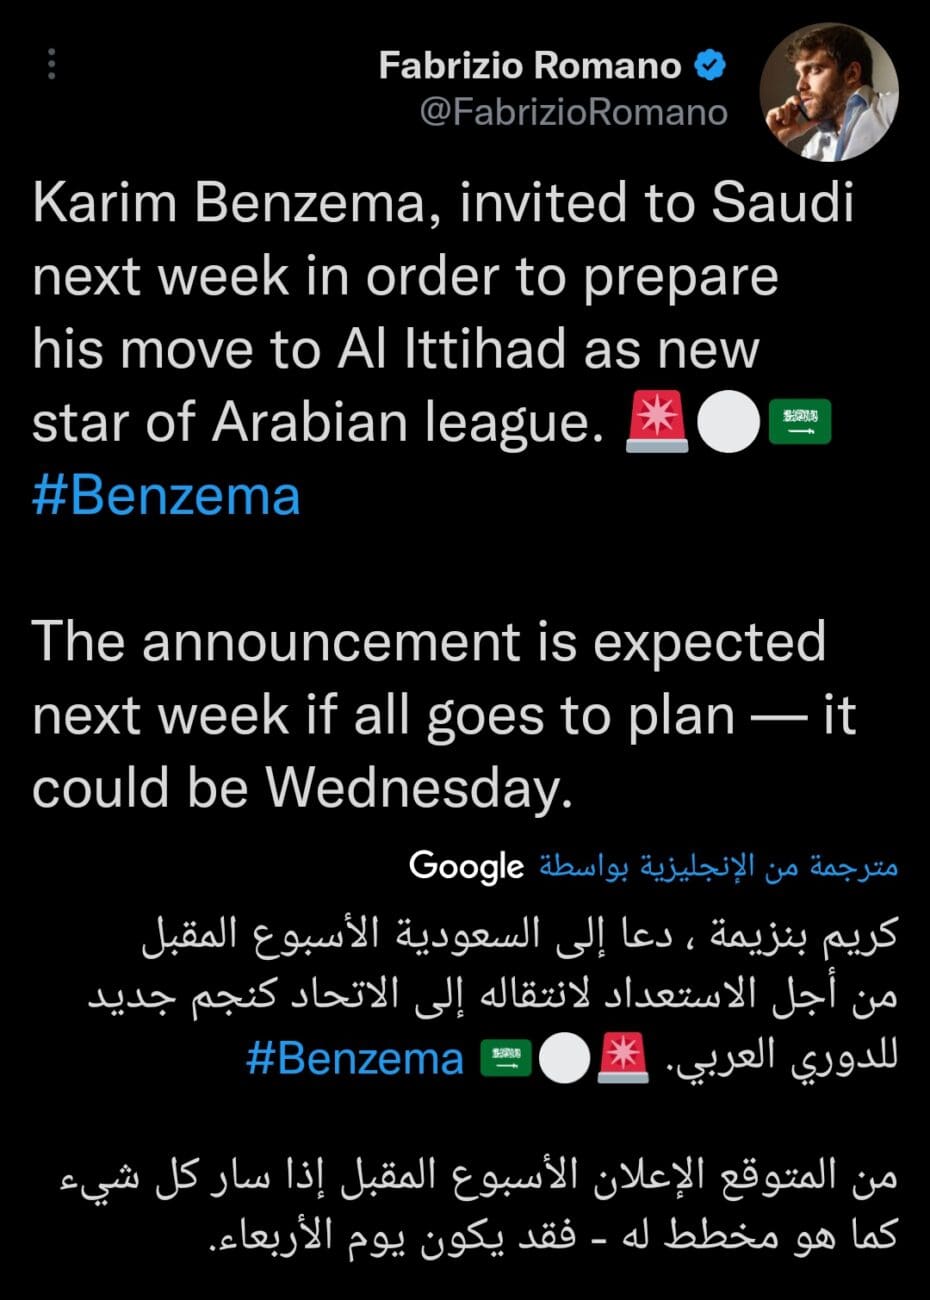 كريم بنزيما ينضم إلى الاتحاد في الموسم المقبل وهذا موعد الإعلان عن الصفقة